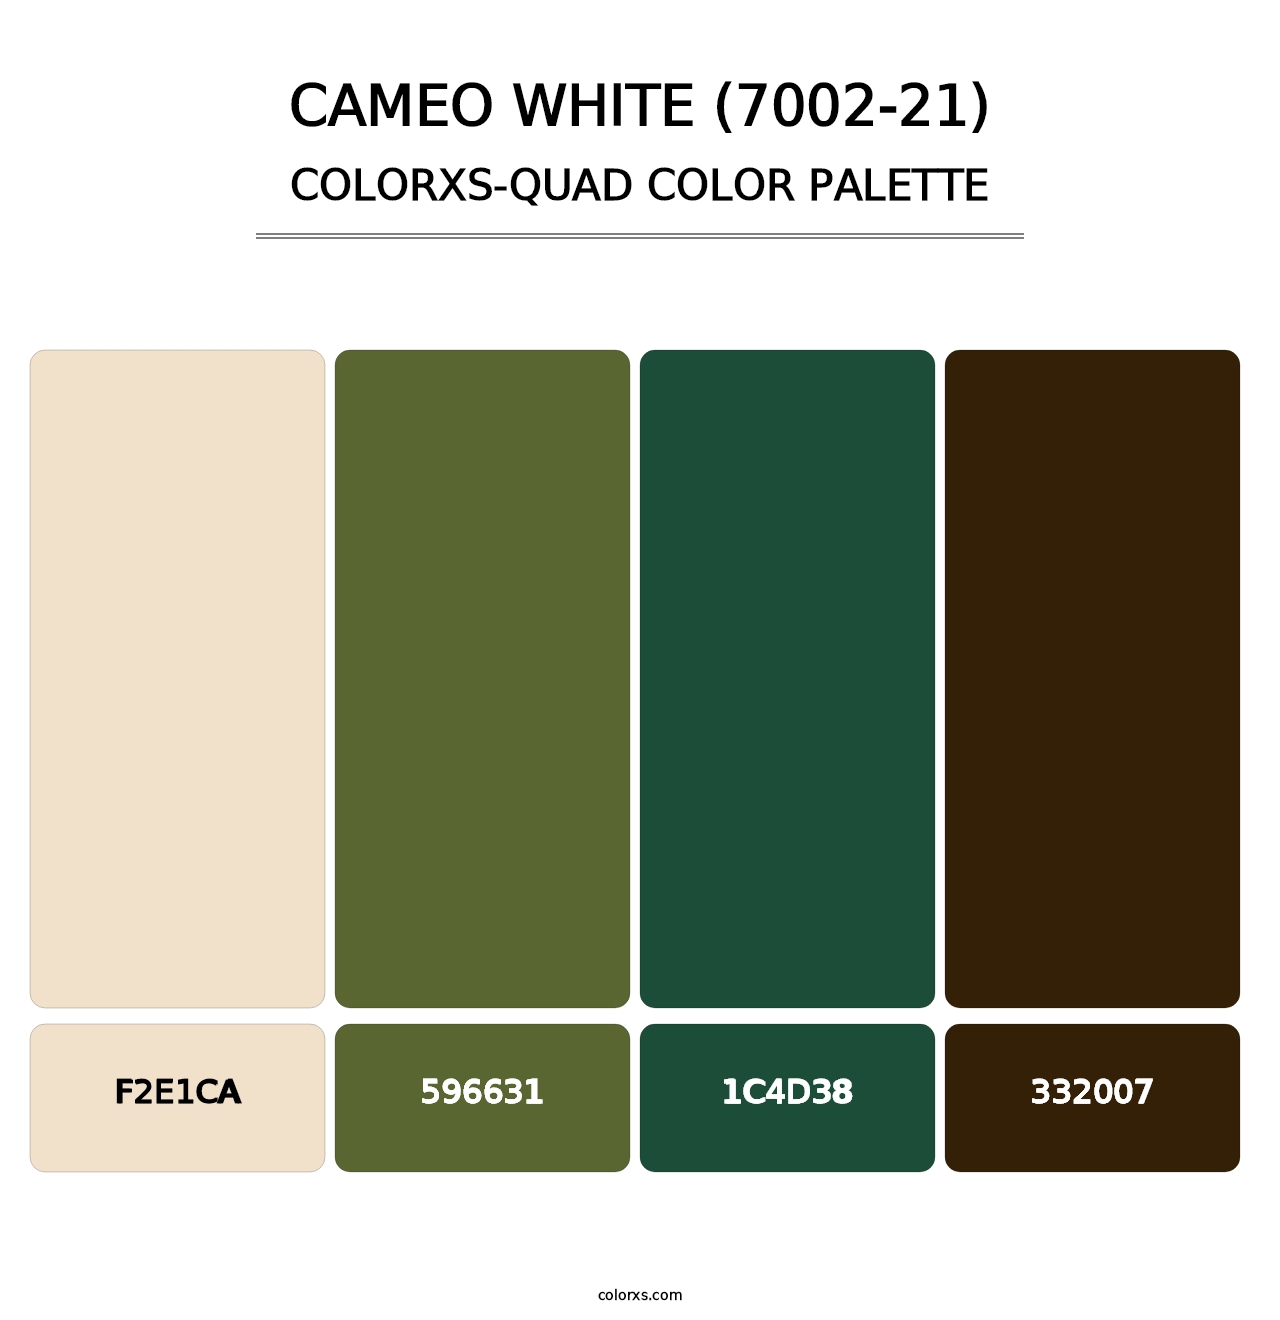 Cameo White (7002-21) - Colorxs Quad Palette